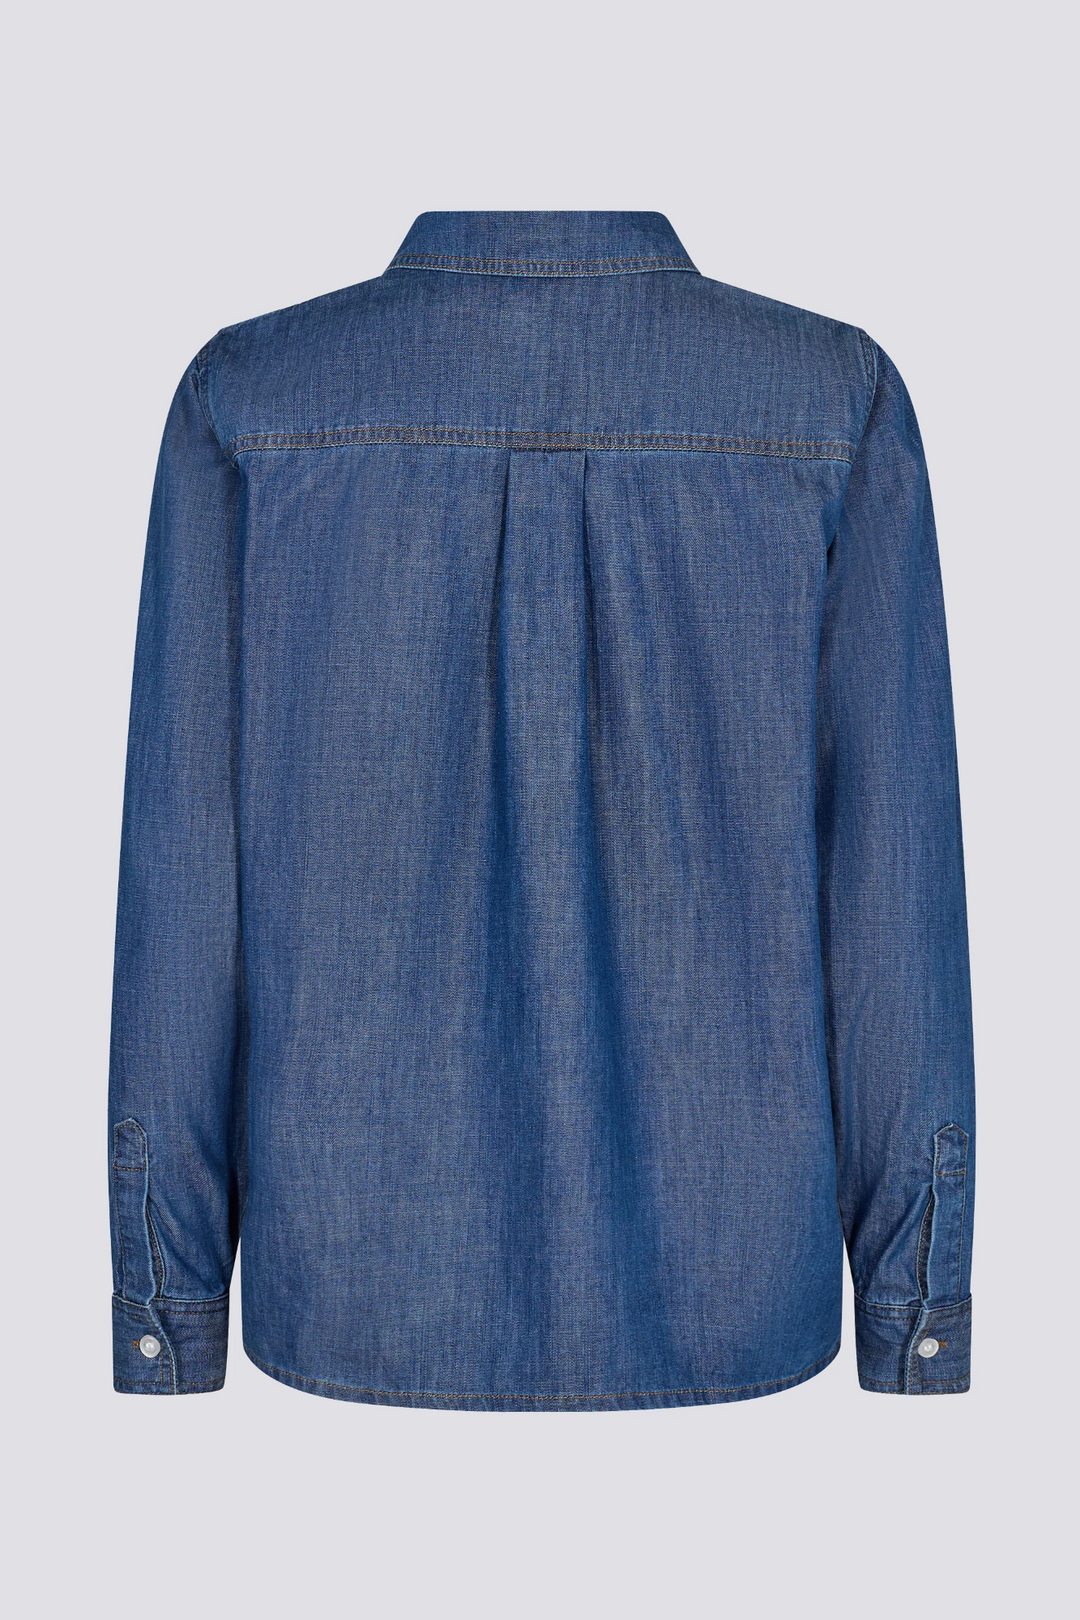 Skjorte | IVY Copenhagen Ora Shirt Wash Vintage, denim blue